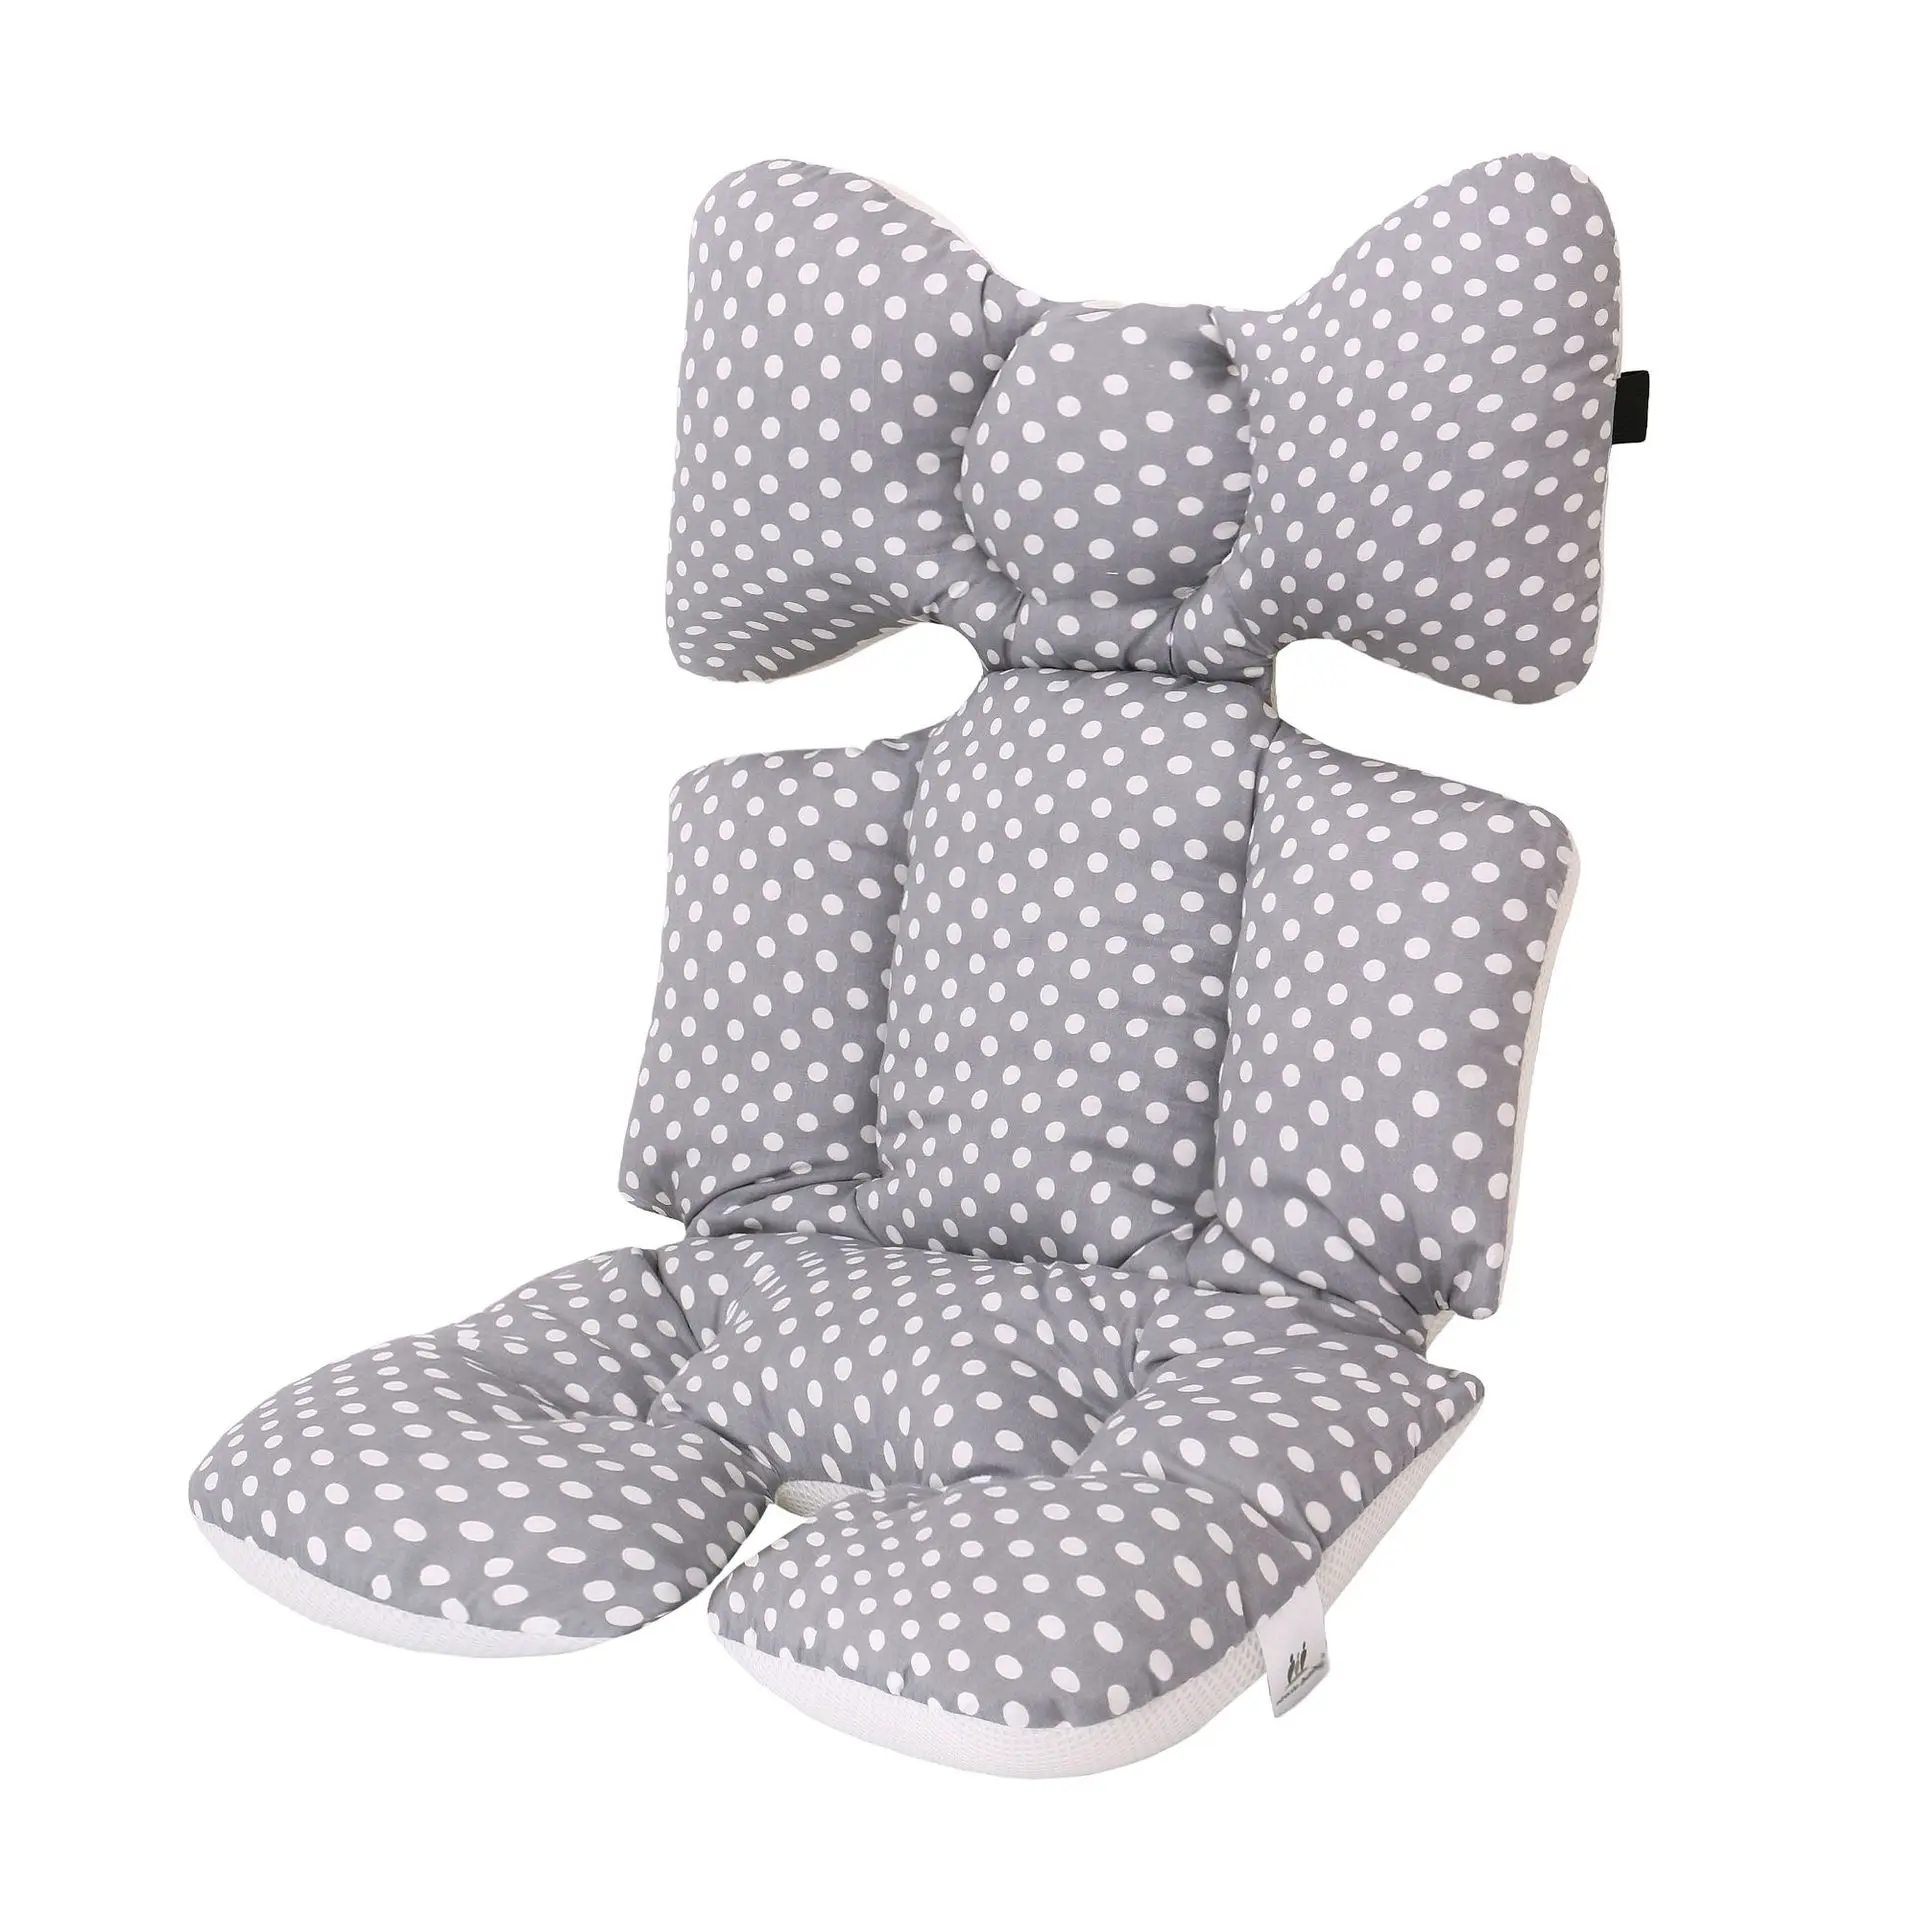 Baby Stoffdruck Kinderwagen Baby Sitzkissen Warme Kissen Pad Matratze KoS5A7 2X 